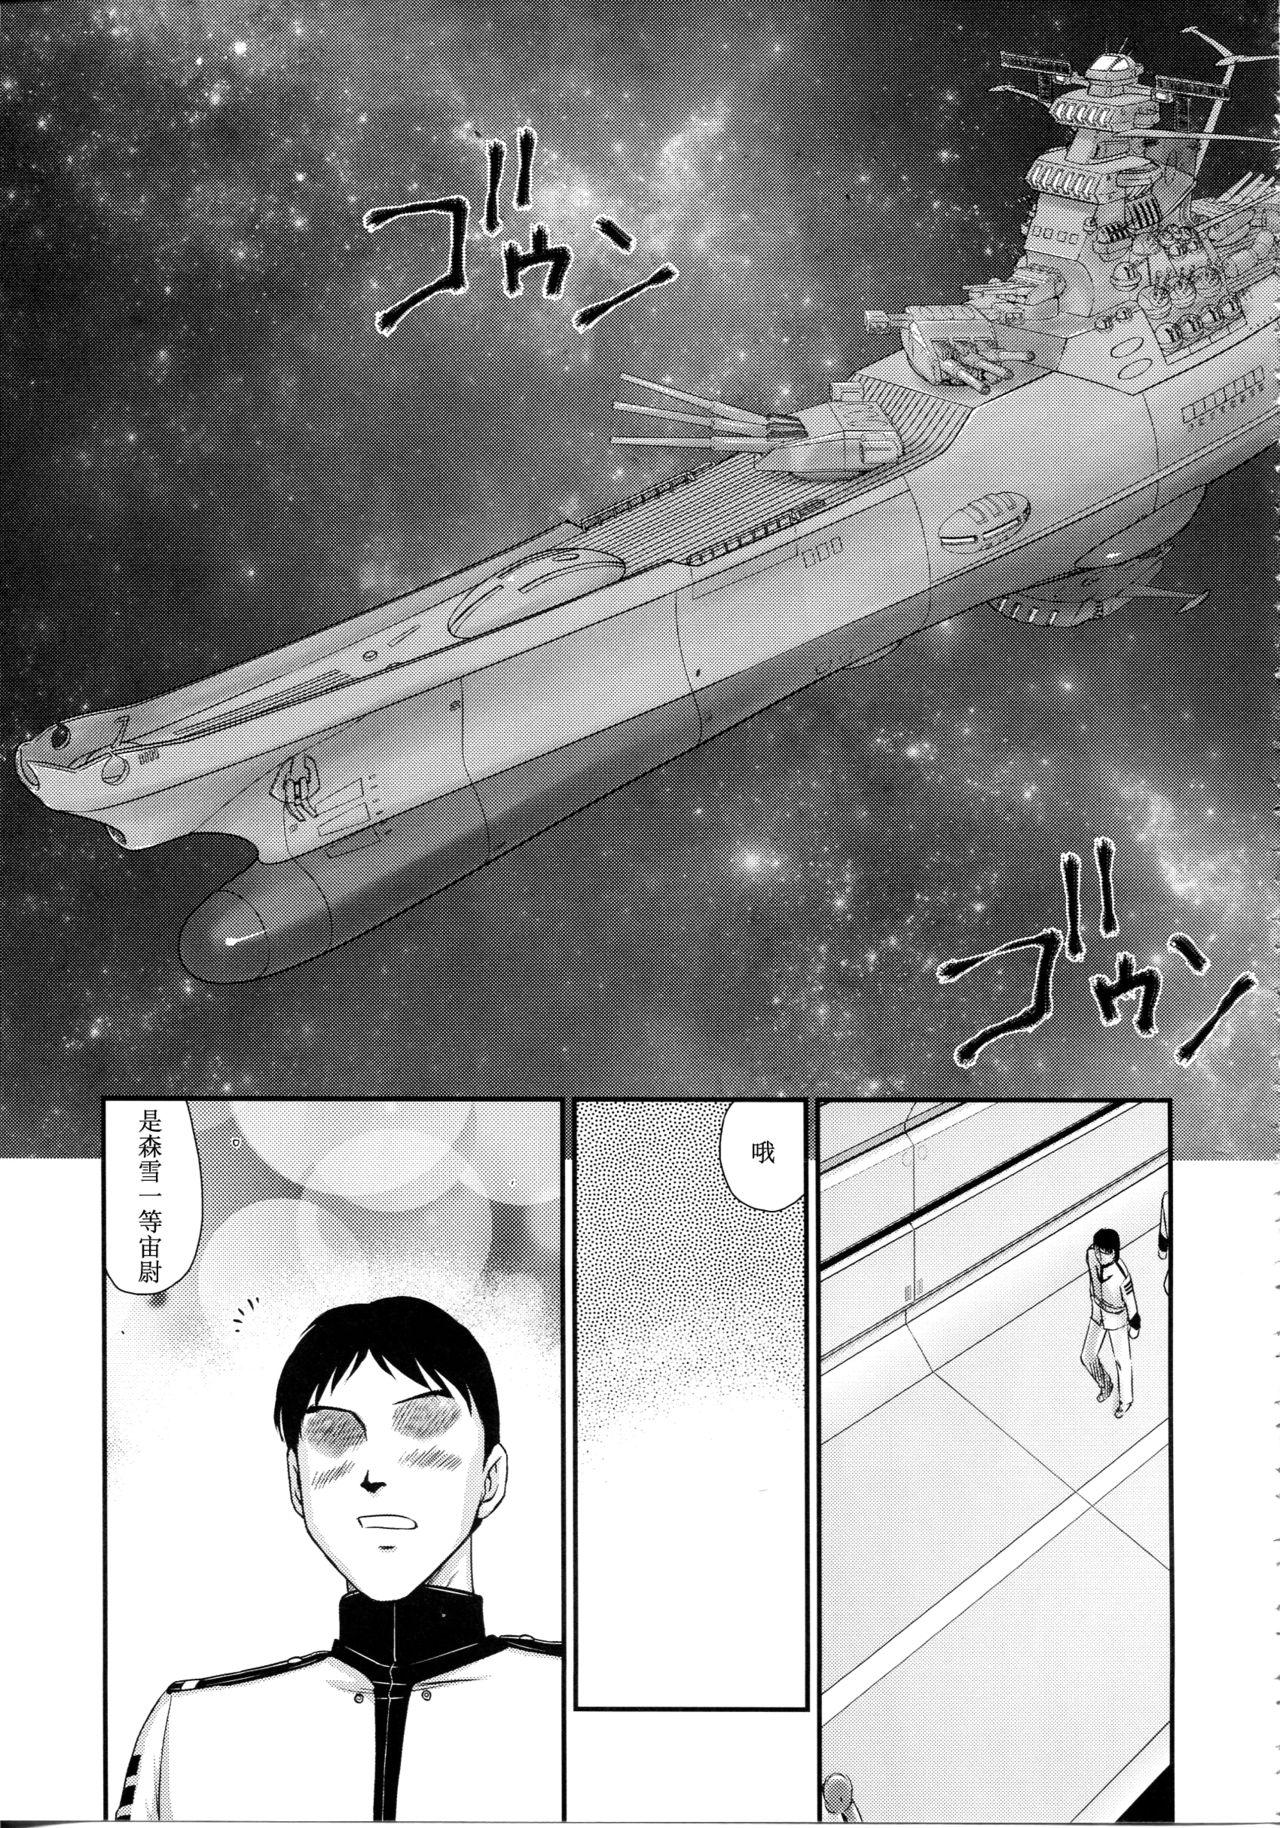 Gang Yuki no Shizuku - Space battleship yamato 2199 Liveshow - Page 10